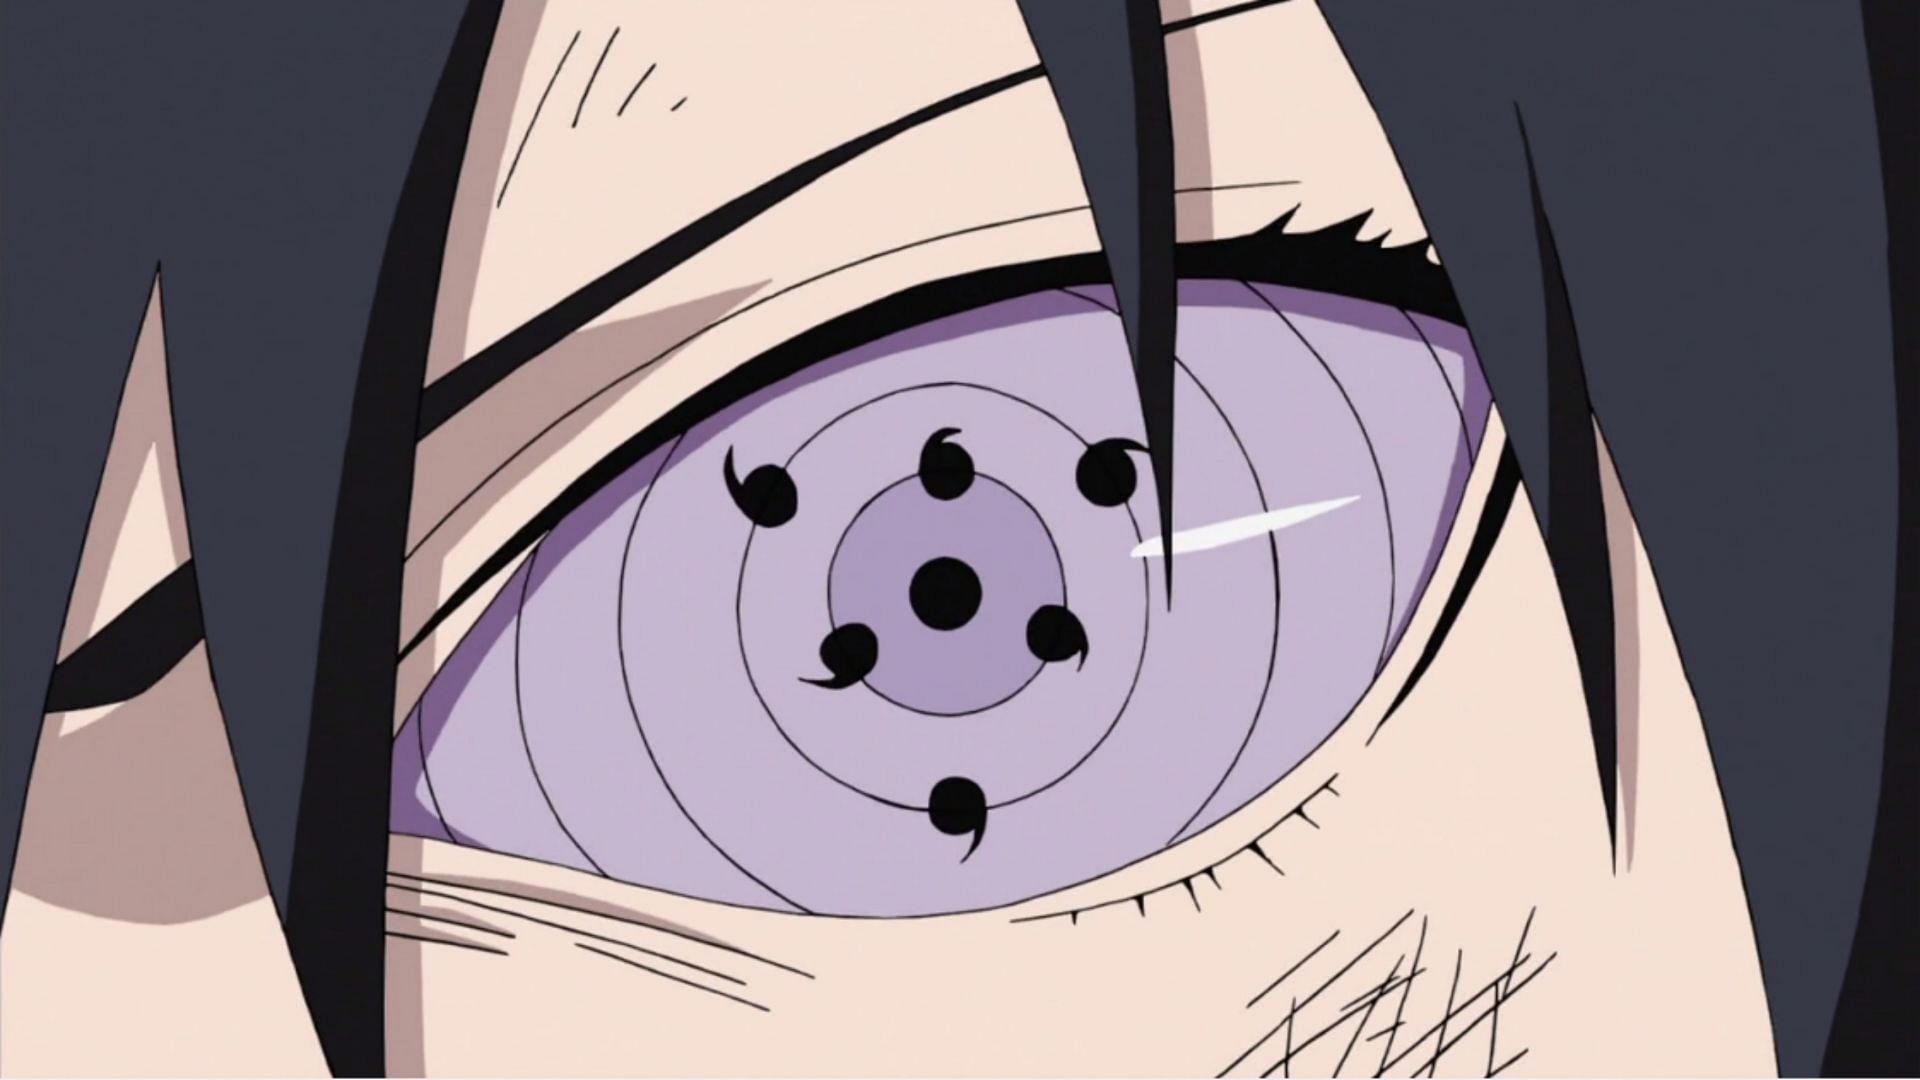 Naruto  Naruto eyes, Manga eyes, Naruto drawings